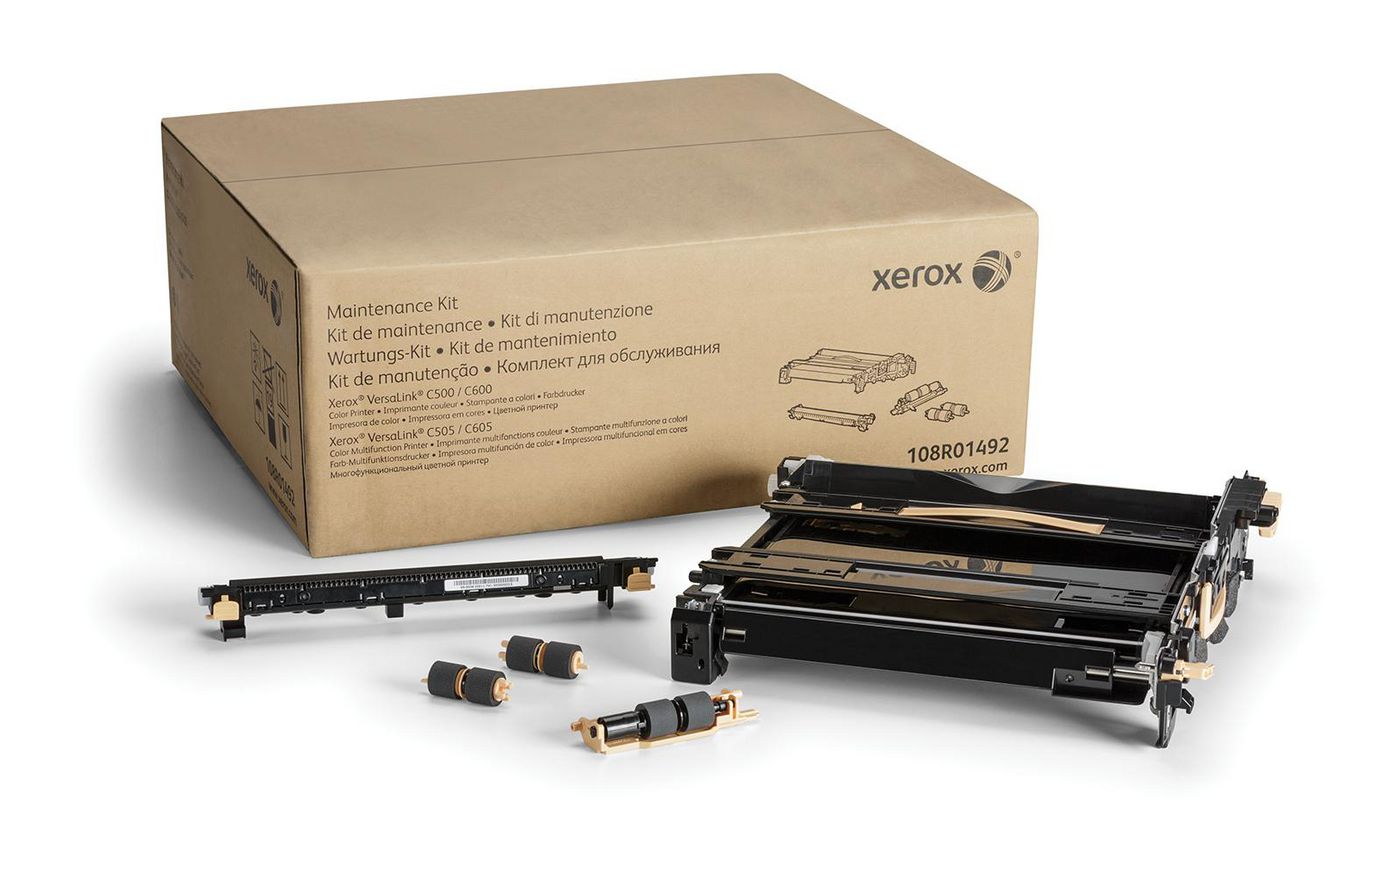 XEROX Maintenance Kit